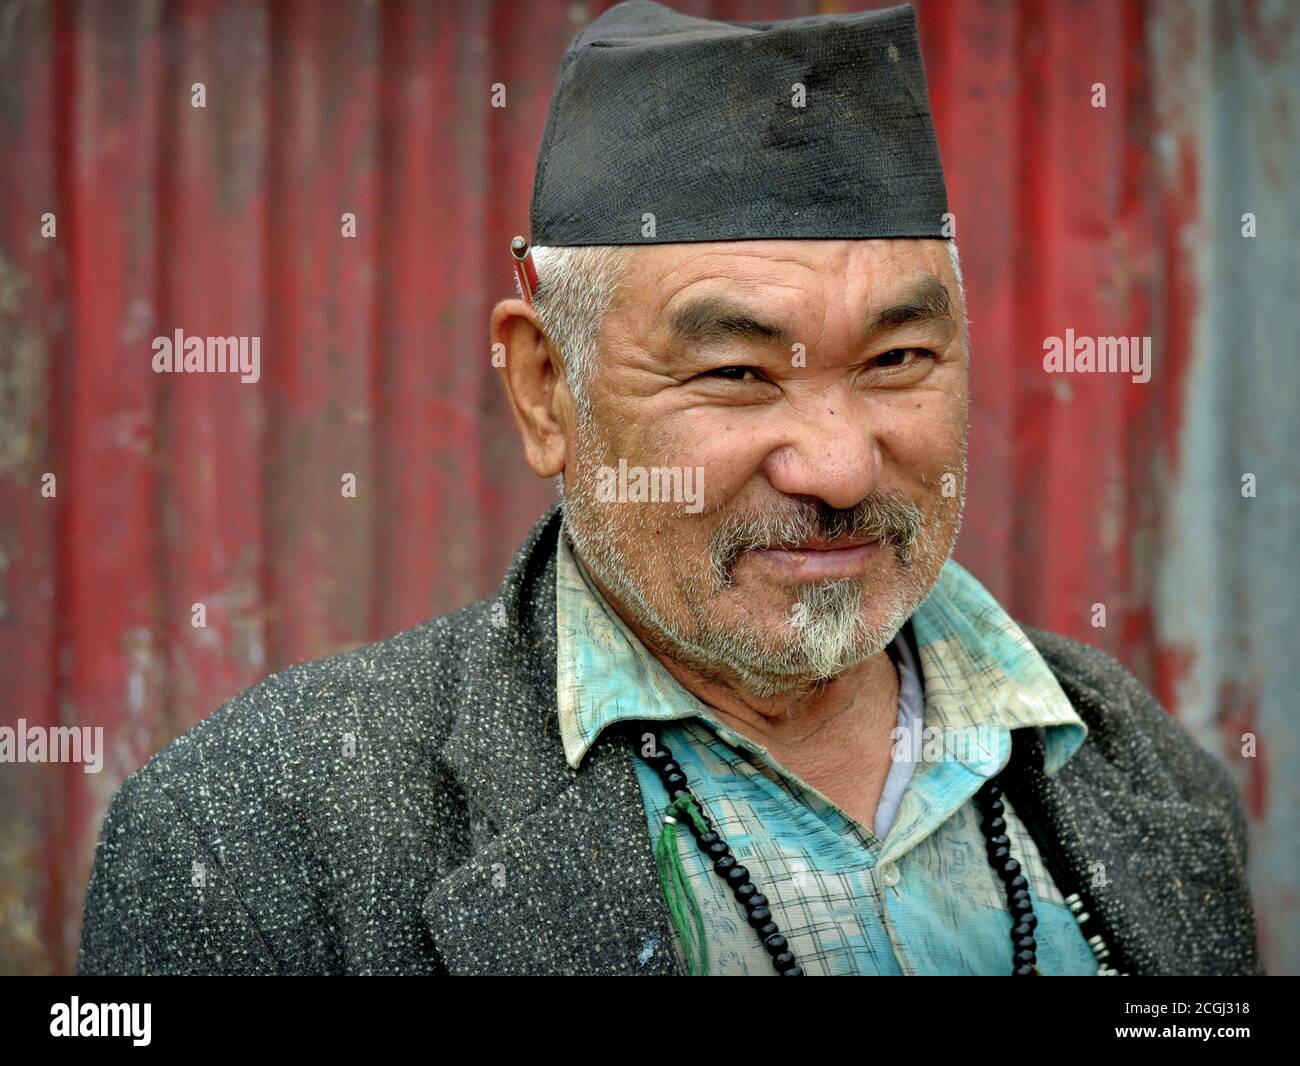 L'anziano falegname Nepali Sherpa/Hyolmo con matita dietro l'orecchio si pone per la fotocamera. Foto Stock